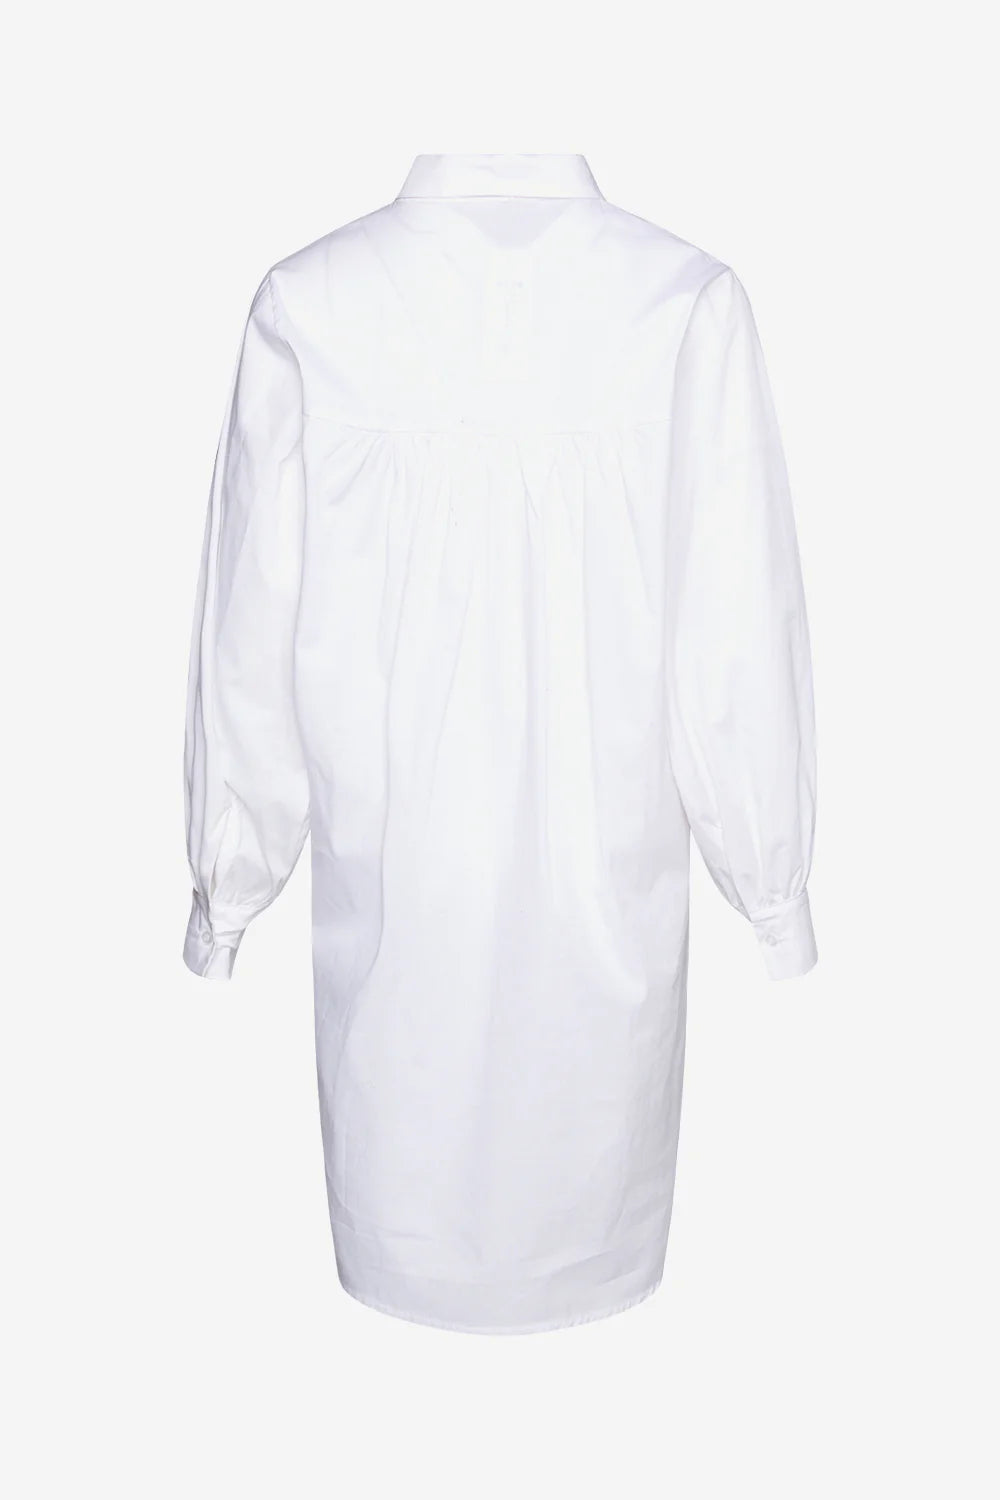 Tate Long Shirt White